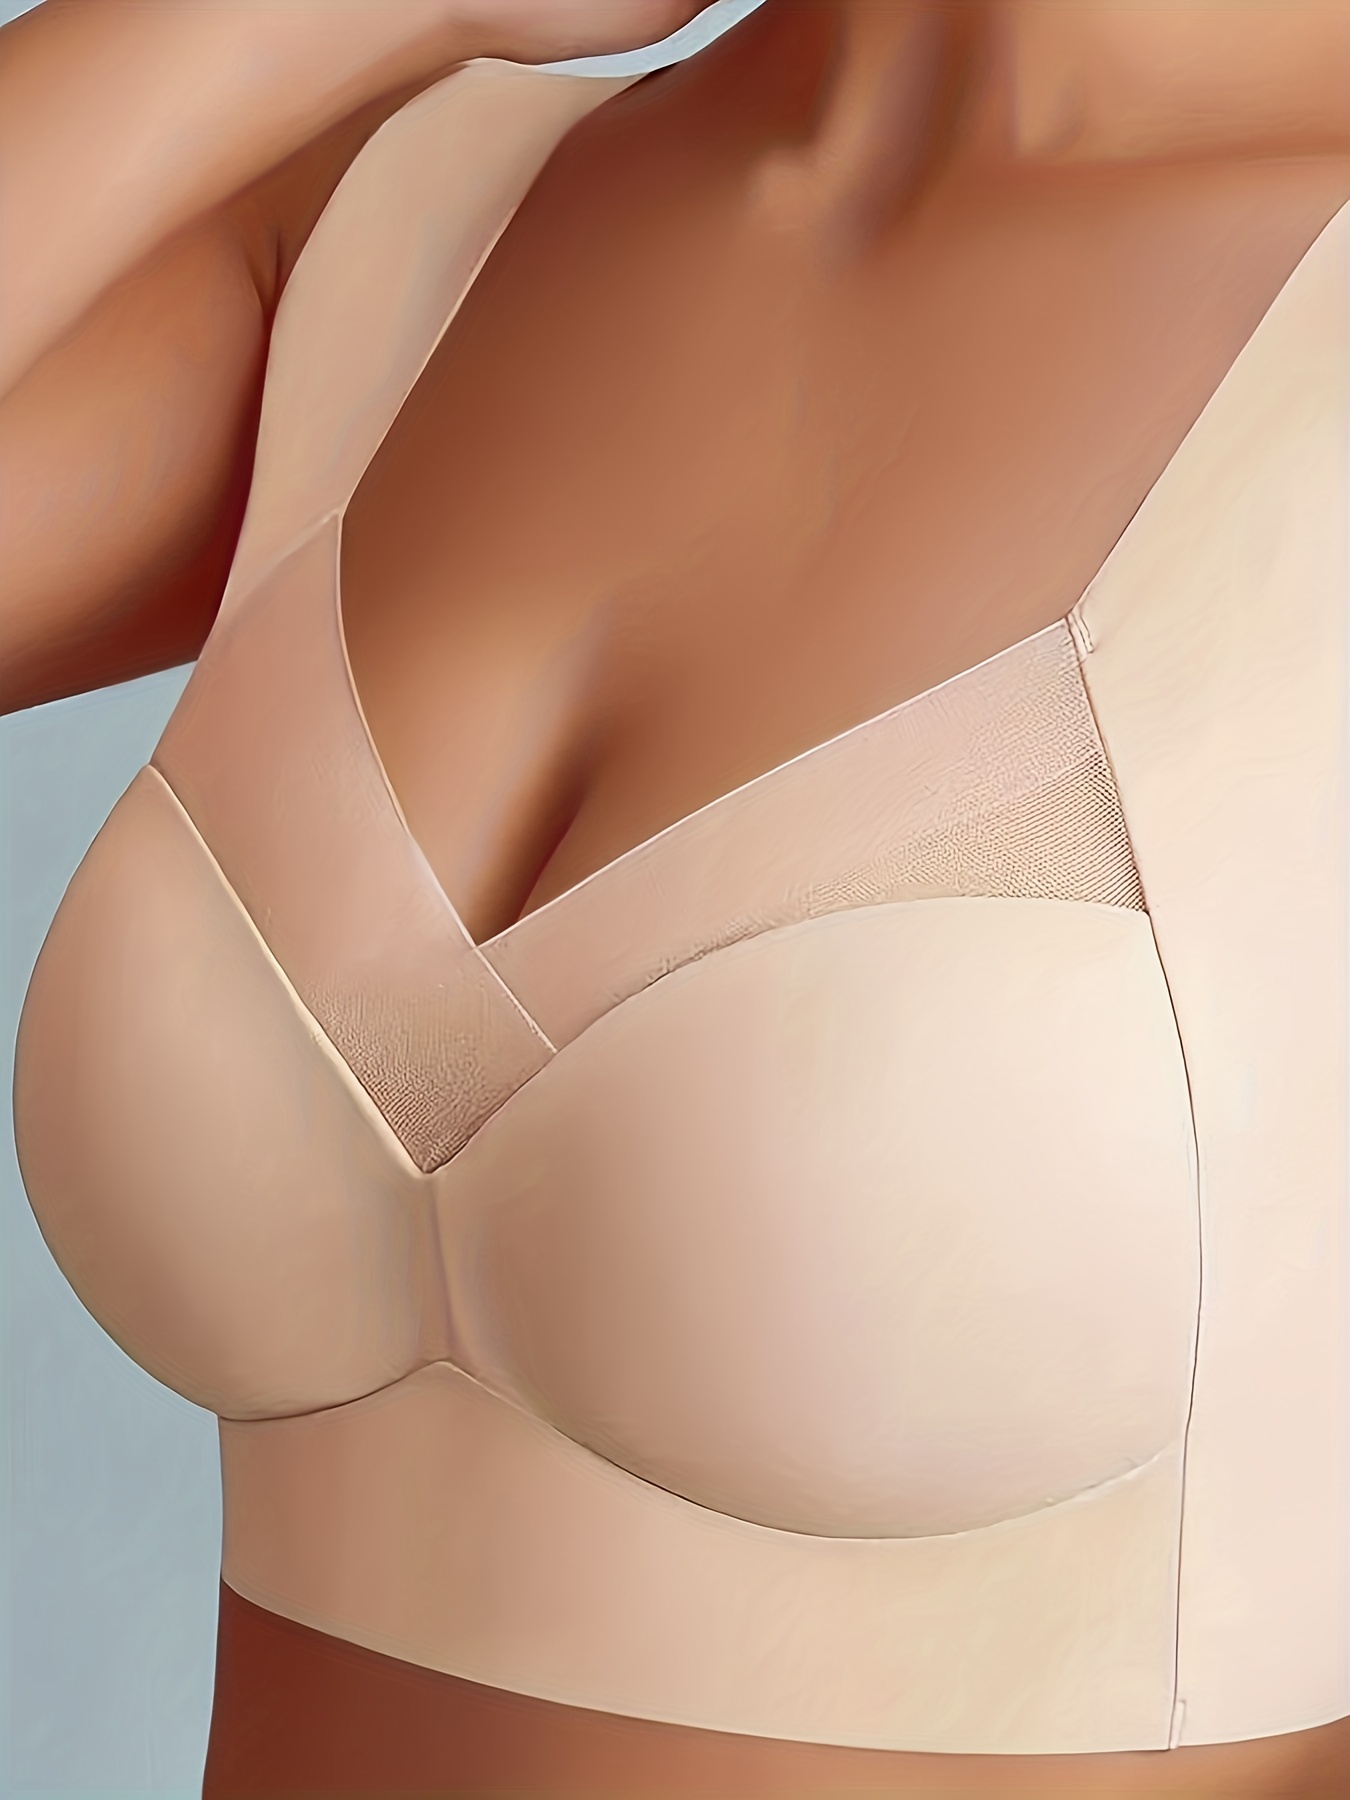 nsendm Female Underwear Adult Woman's Bras Women's Push Up Wireless Bra  Comfort Support No Underwire Bras Comfortable Wire Bralette Women(Beige,  36) 